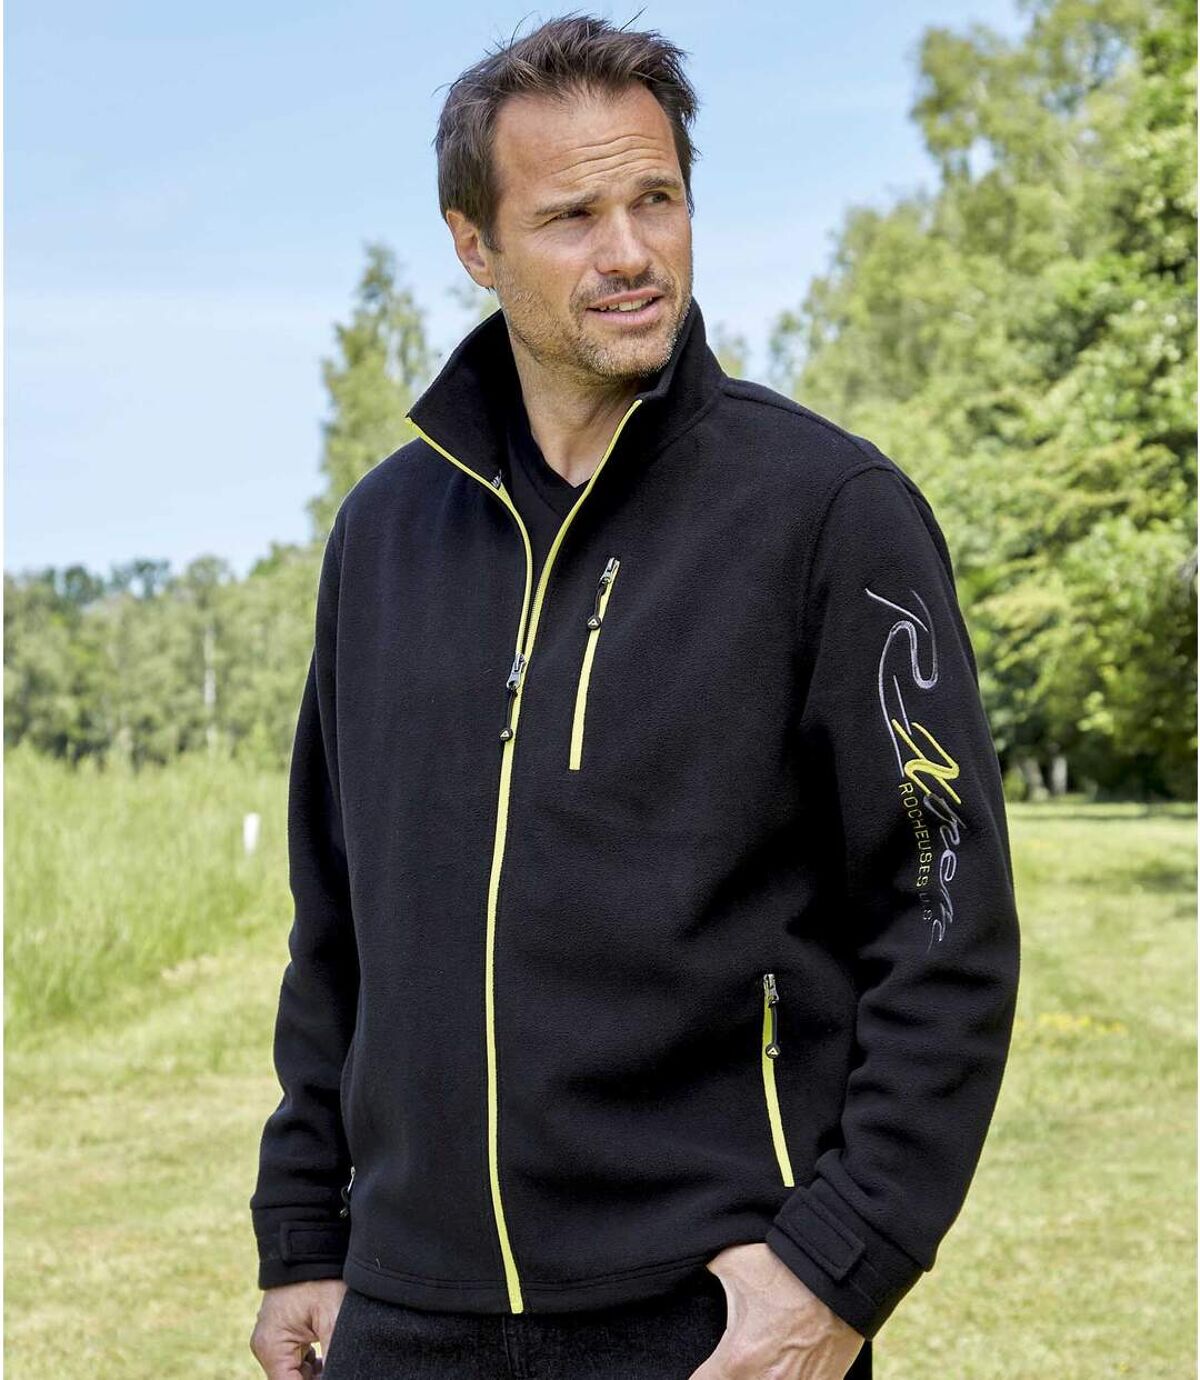 Men's Black Full Zip Fleece Jacket - Yellow Contrasting Details Atlas For Men